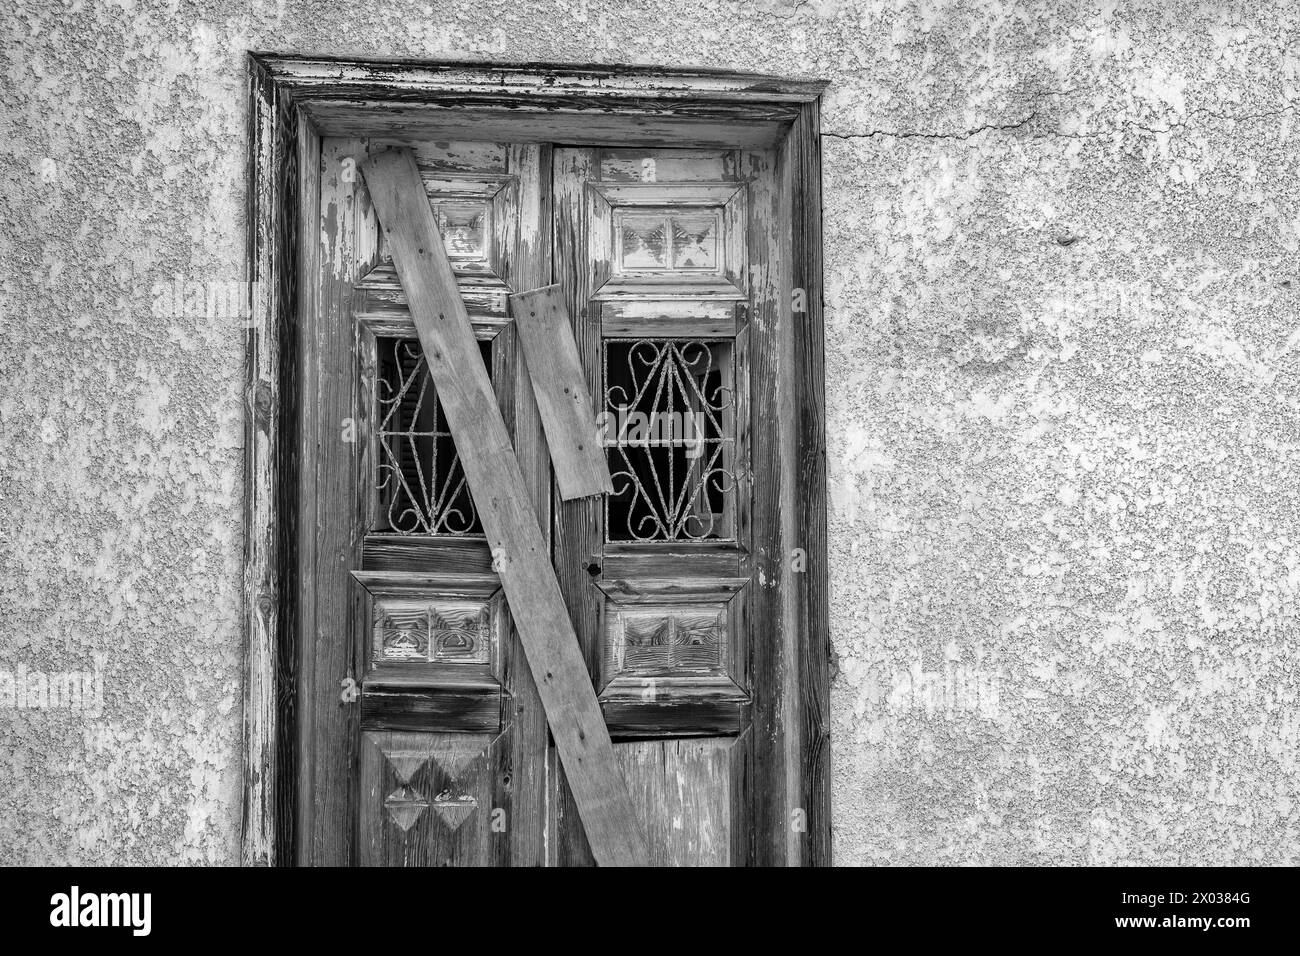 Une image en noir et blanc de planches recouvrant une porte arborée sur une maison arabe abandonnée au moyen-Orient. Banque D'Images